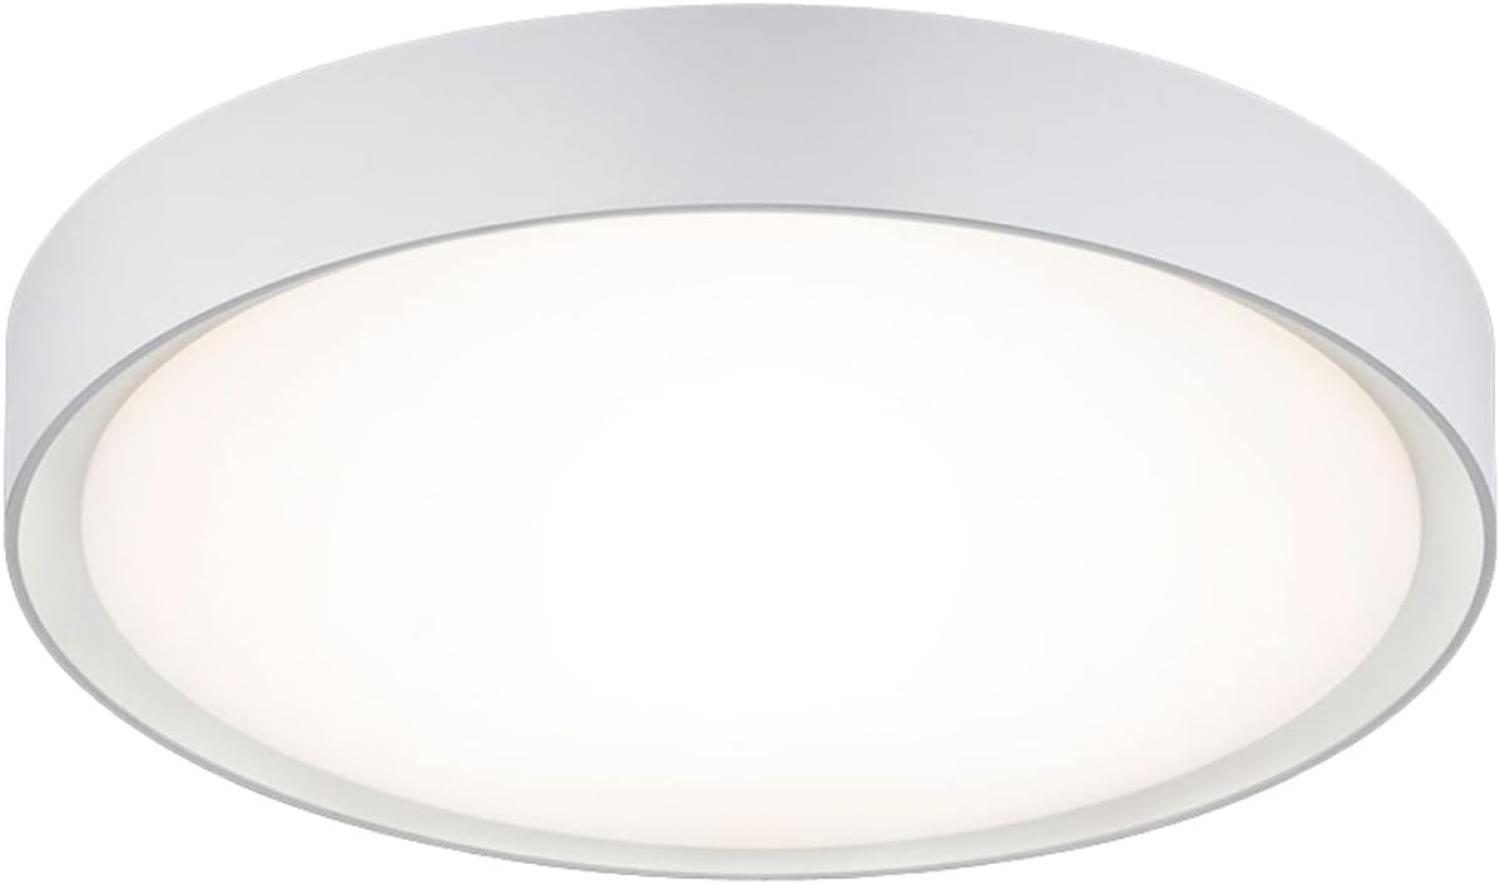 LED Deckenleuchte CLARIMO in Weiß Ø 33cm, IP44 - Badlampen Bild 1